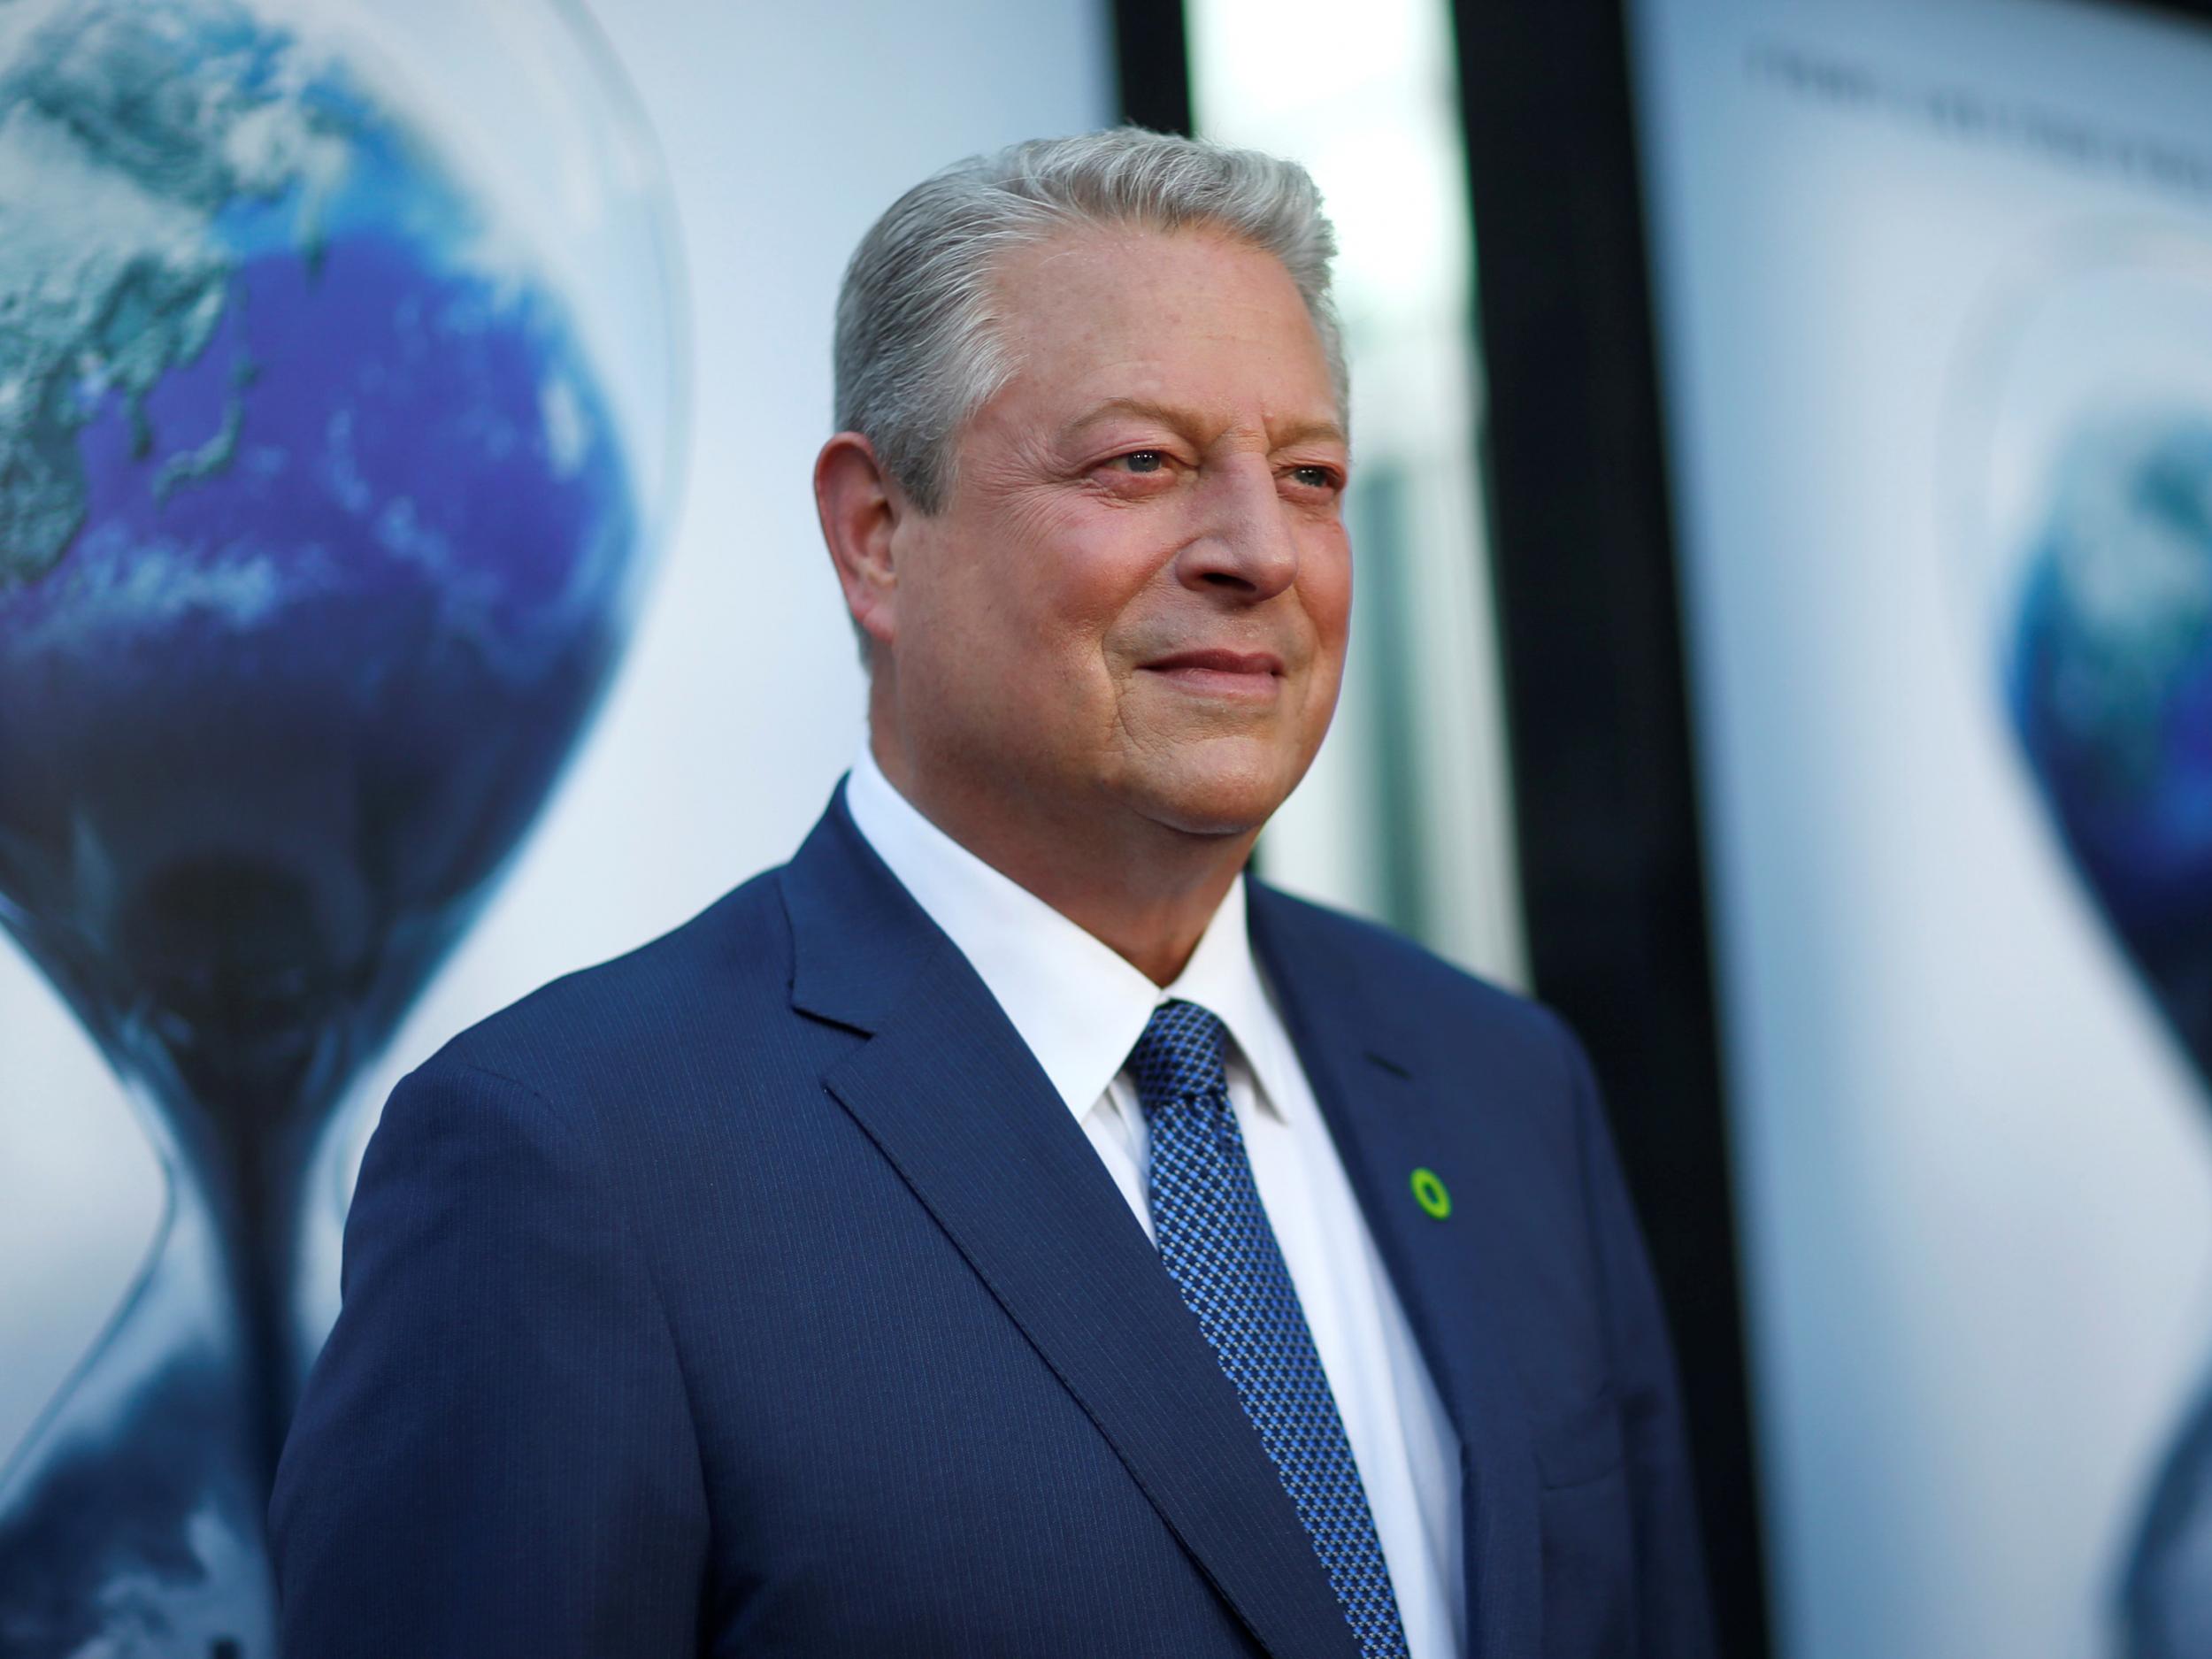 Al Gore is a fan of workplace productivity